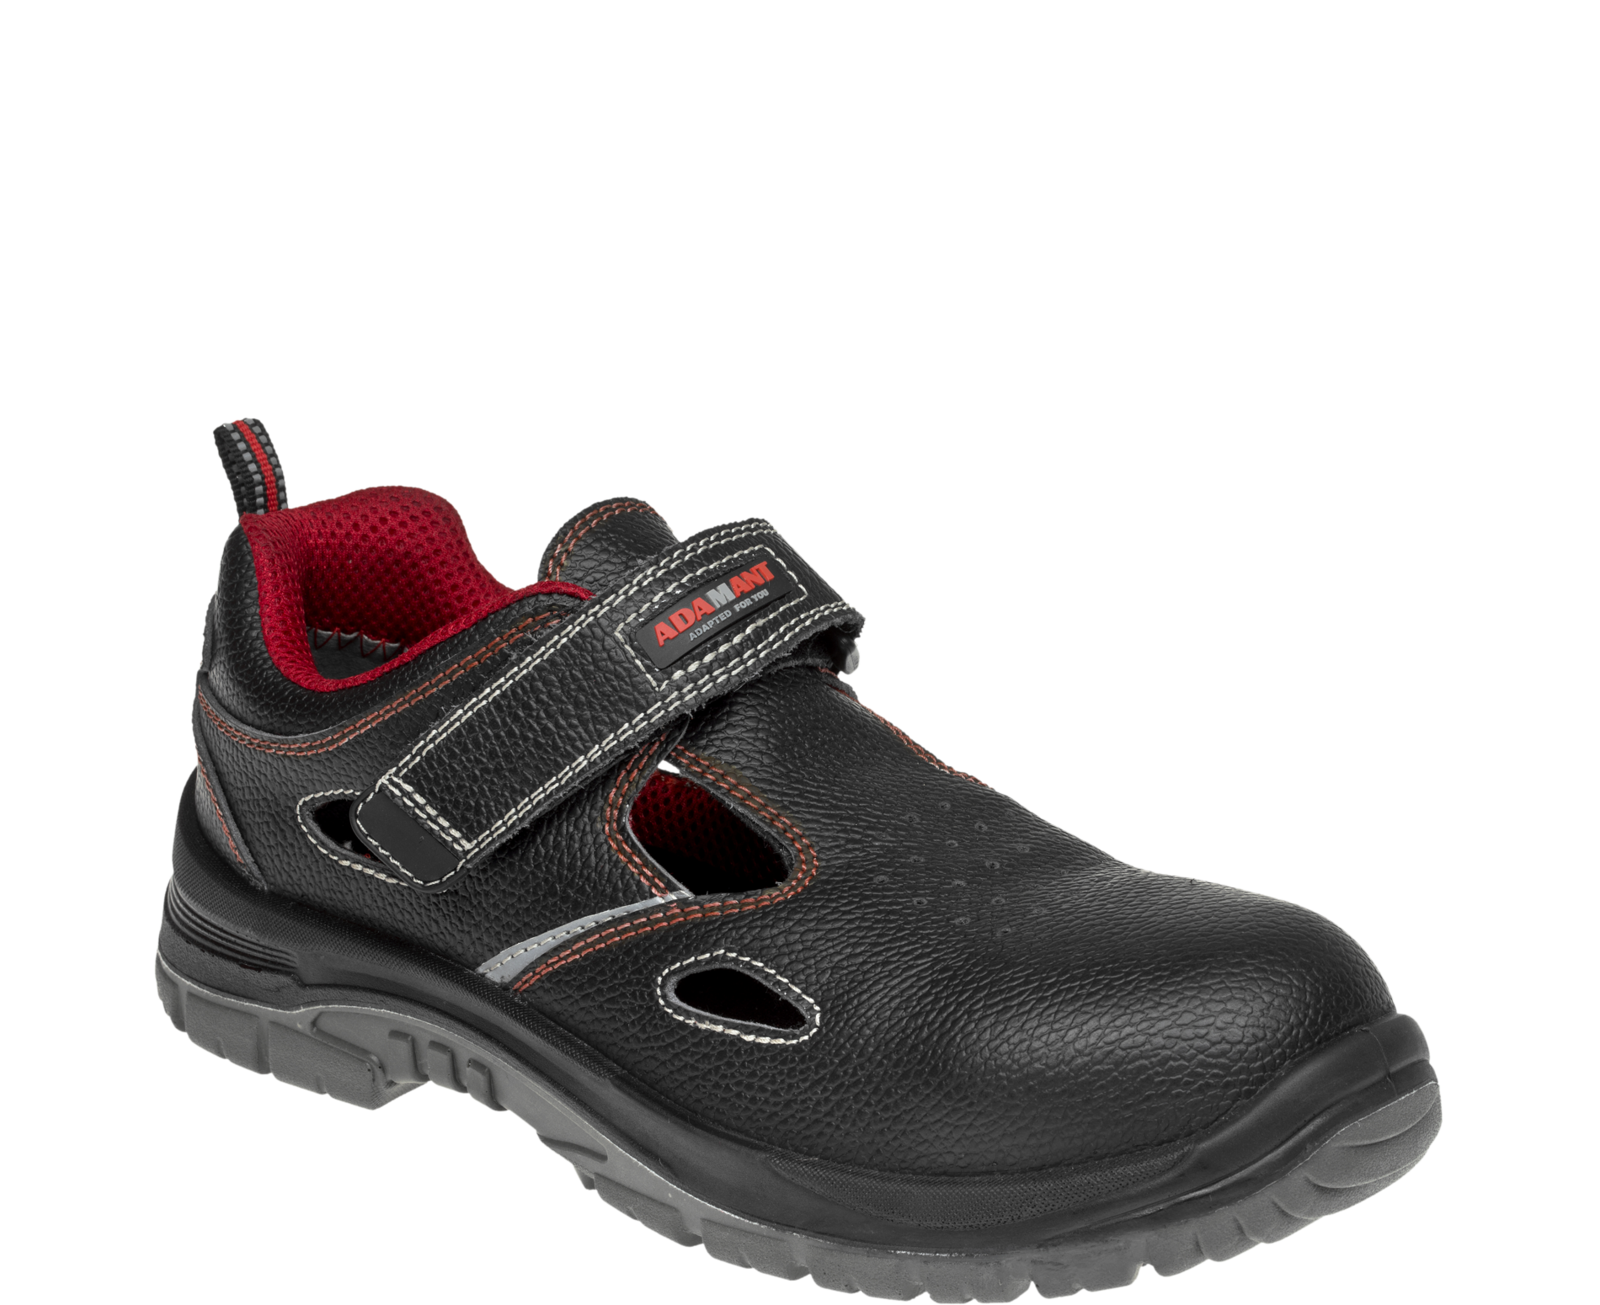 Bezpečnostné sandále Adamant Non Metallic S1 SRC - veľkosť: 43, farba: čierna/červená